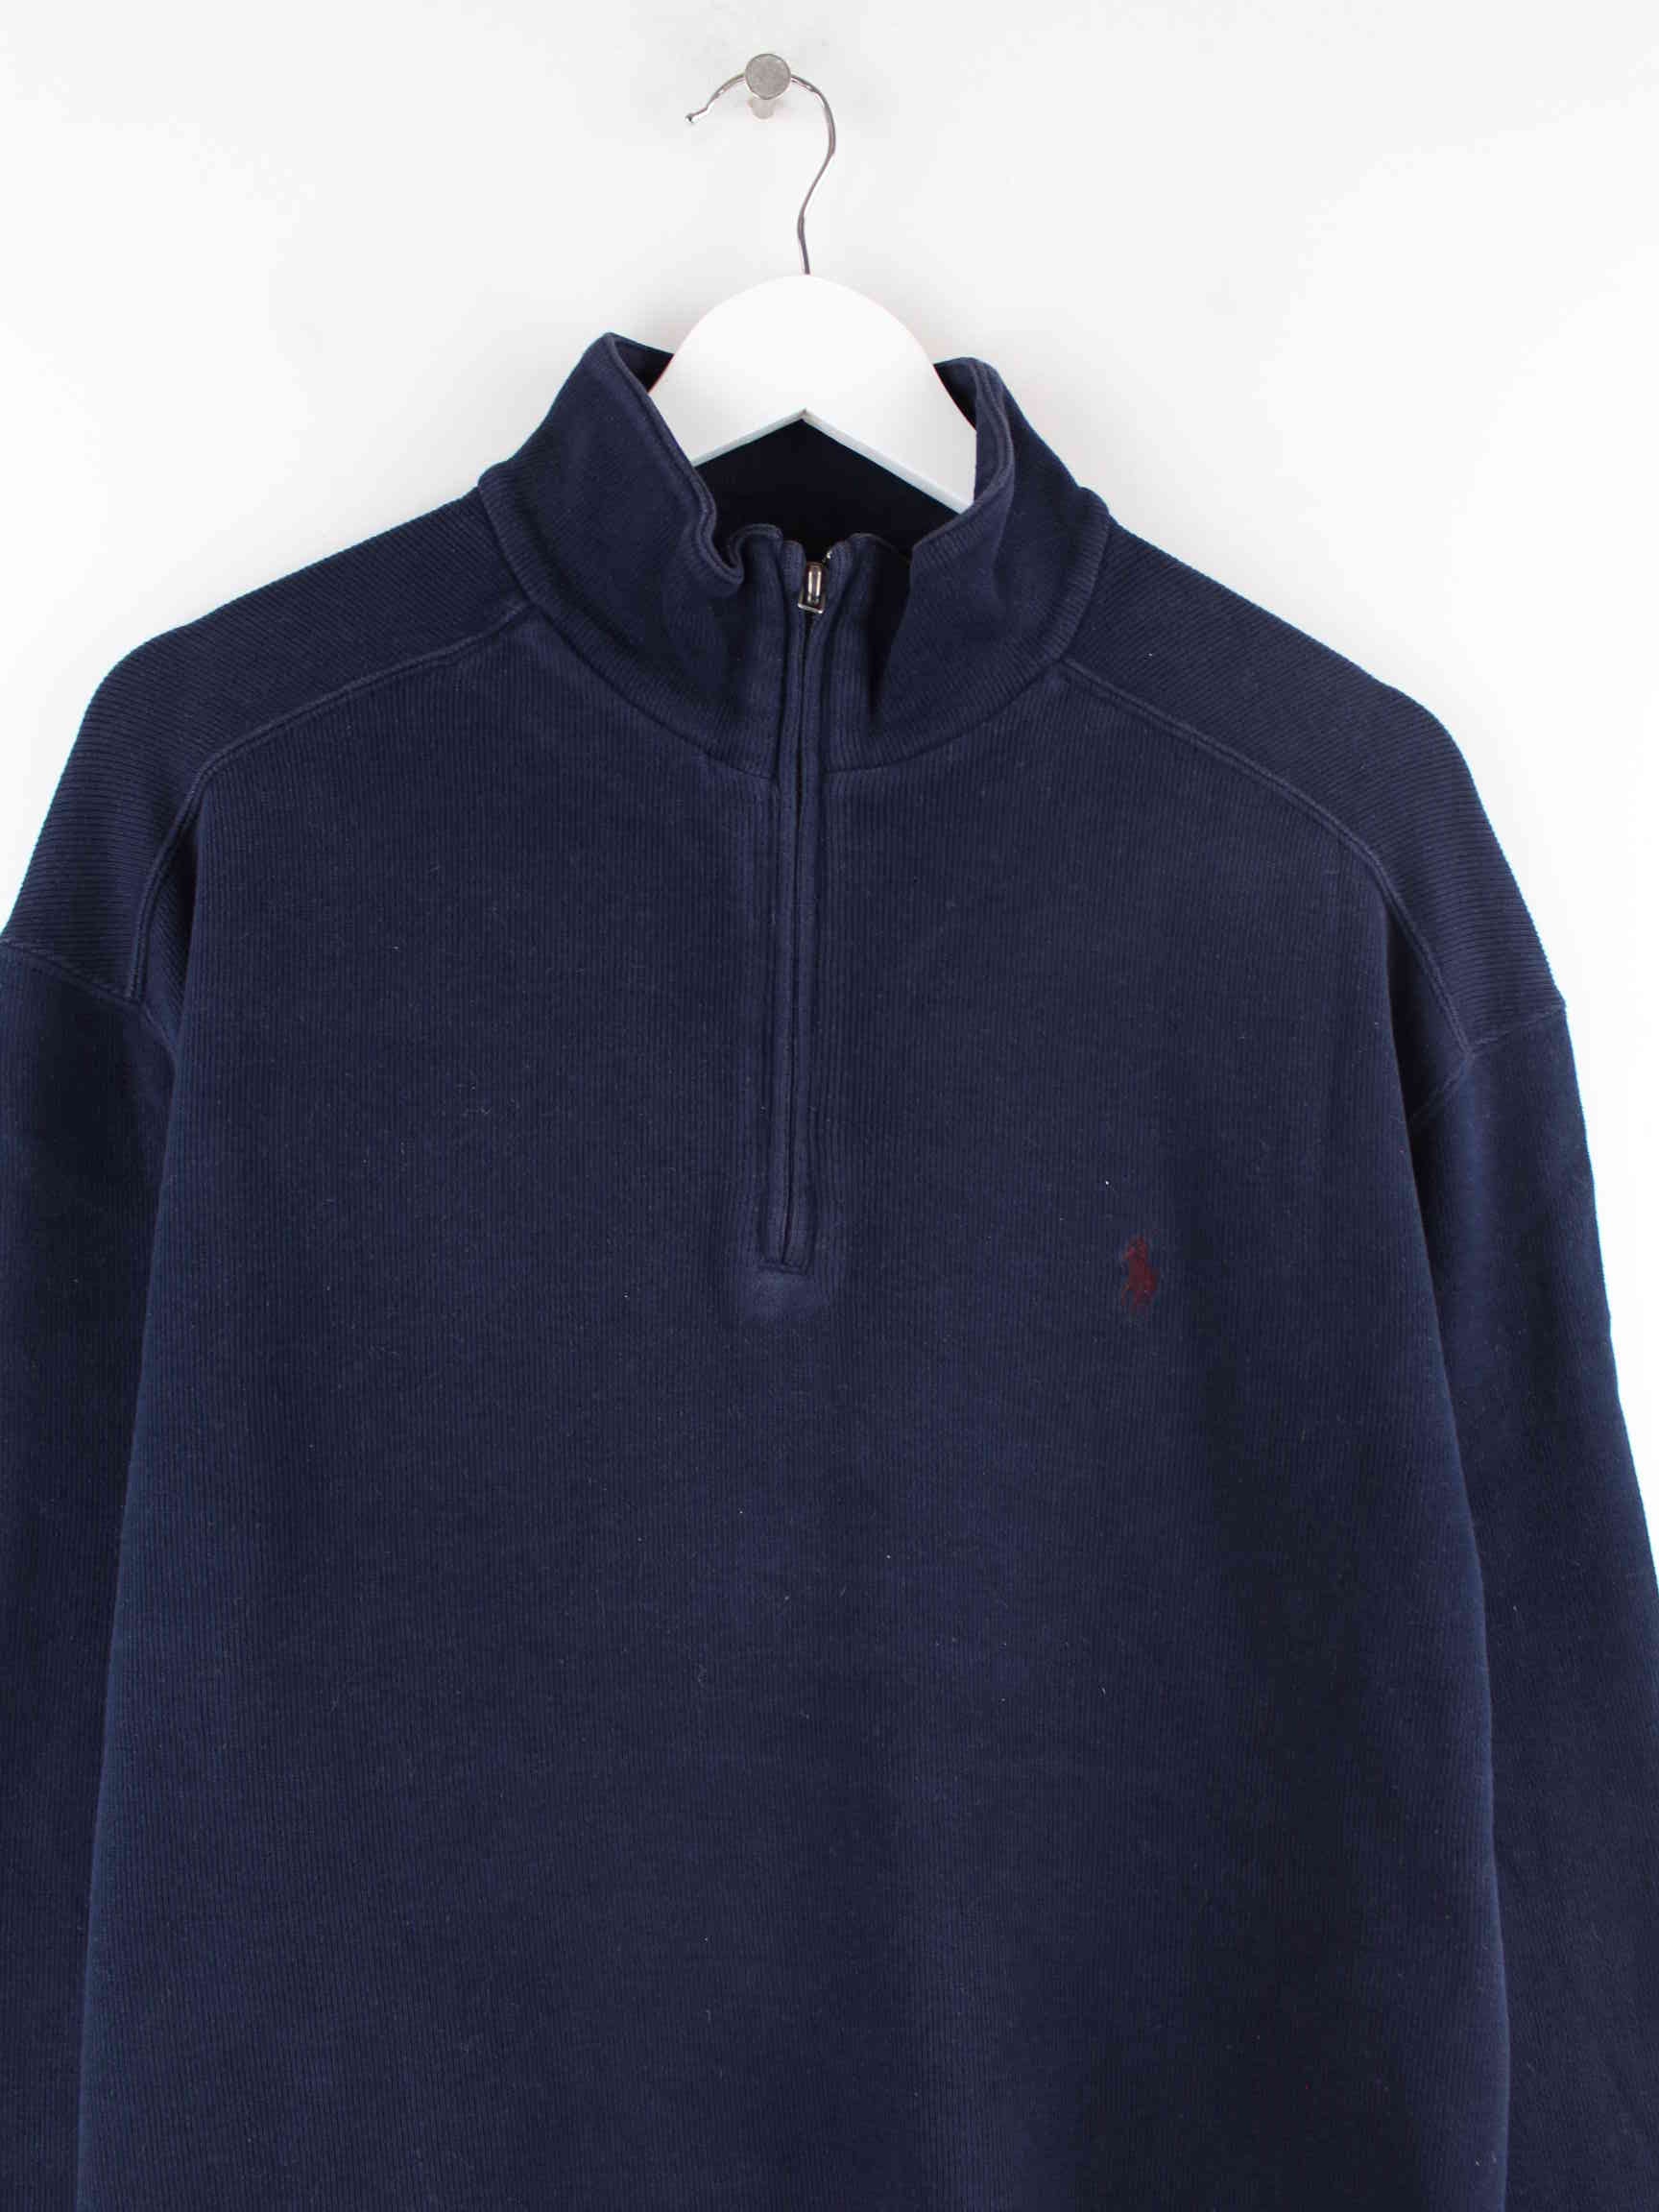 Ralph Lauren 90s Vintage Half Zip Sweater Blau L (detail image 1)